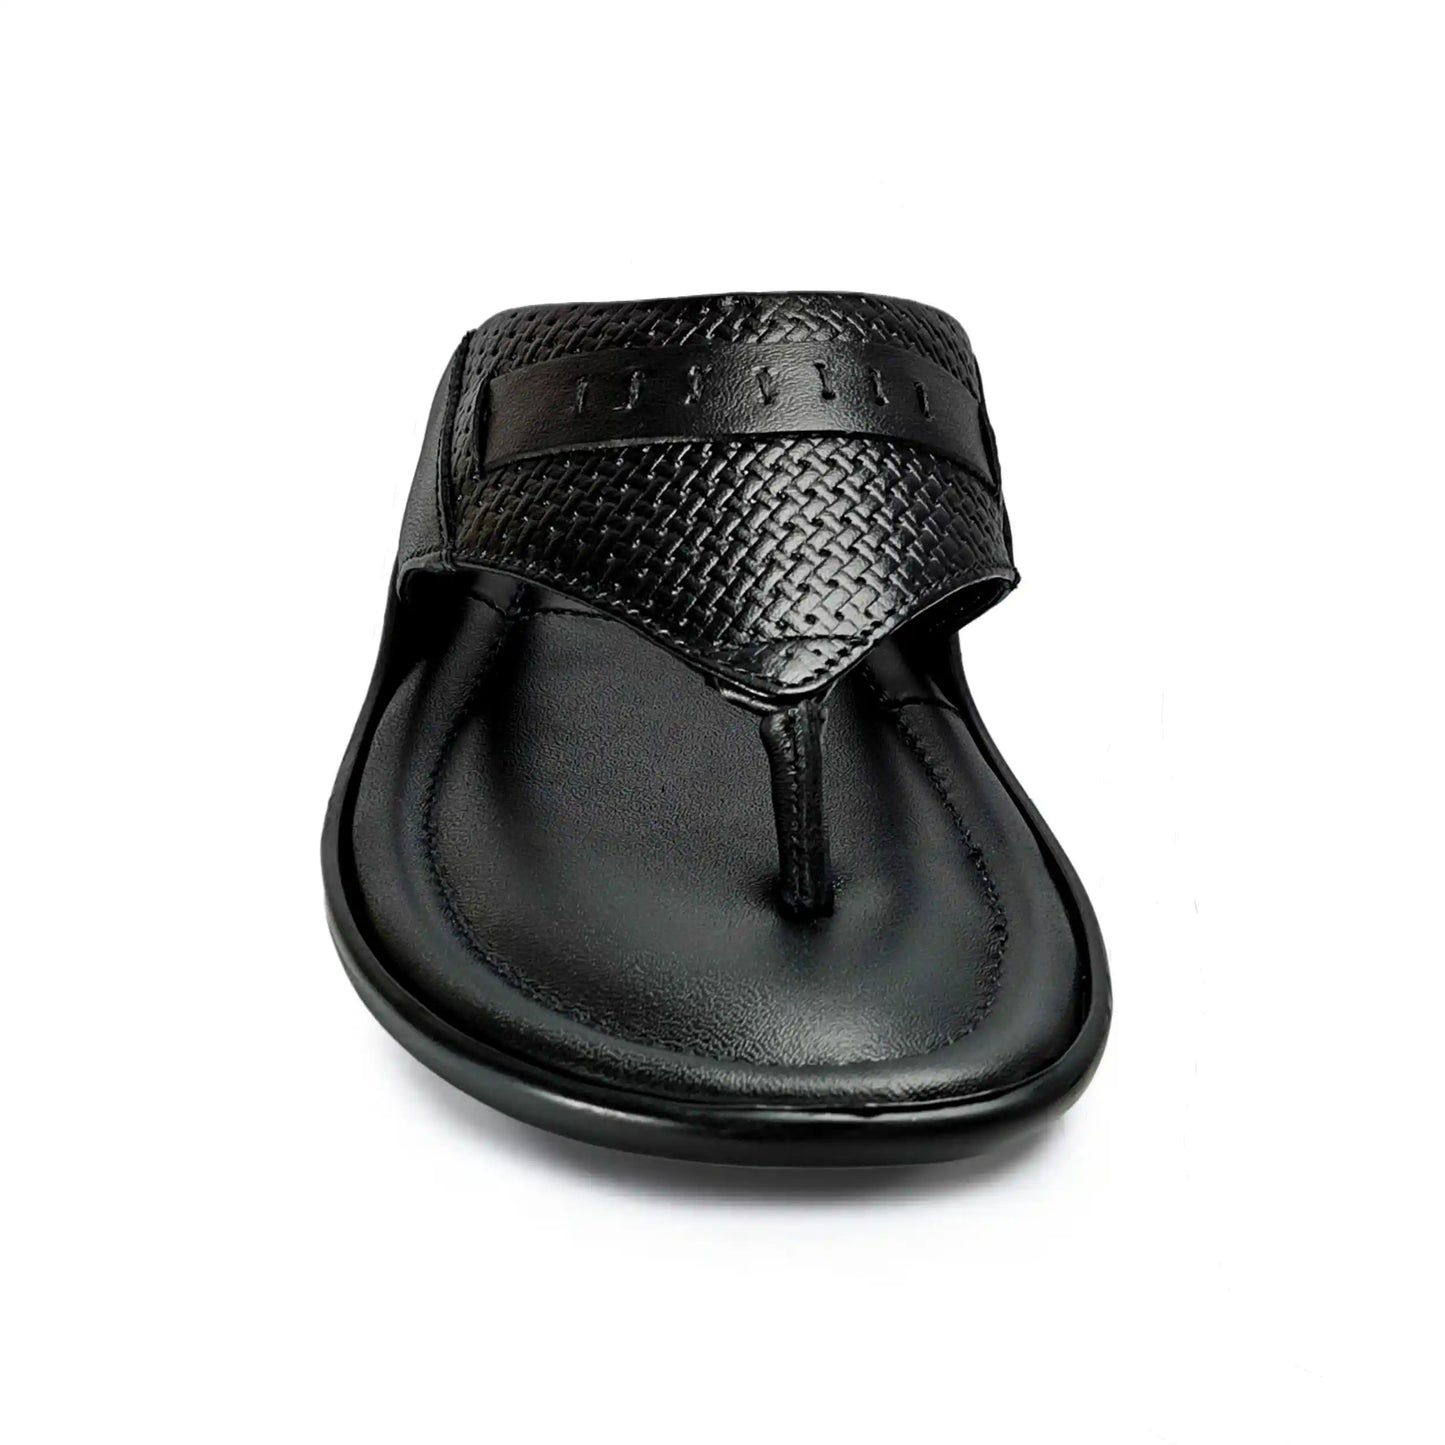 Genuine Leather Slipper for Men Black Sandal